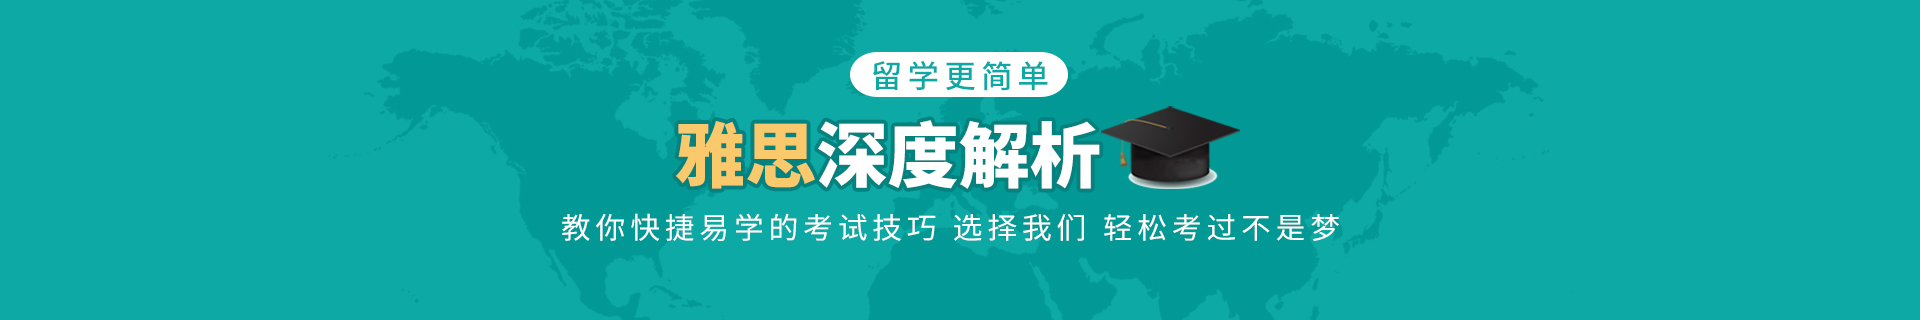 上海闵行环球教育培训机构